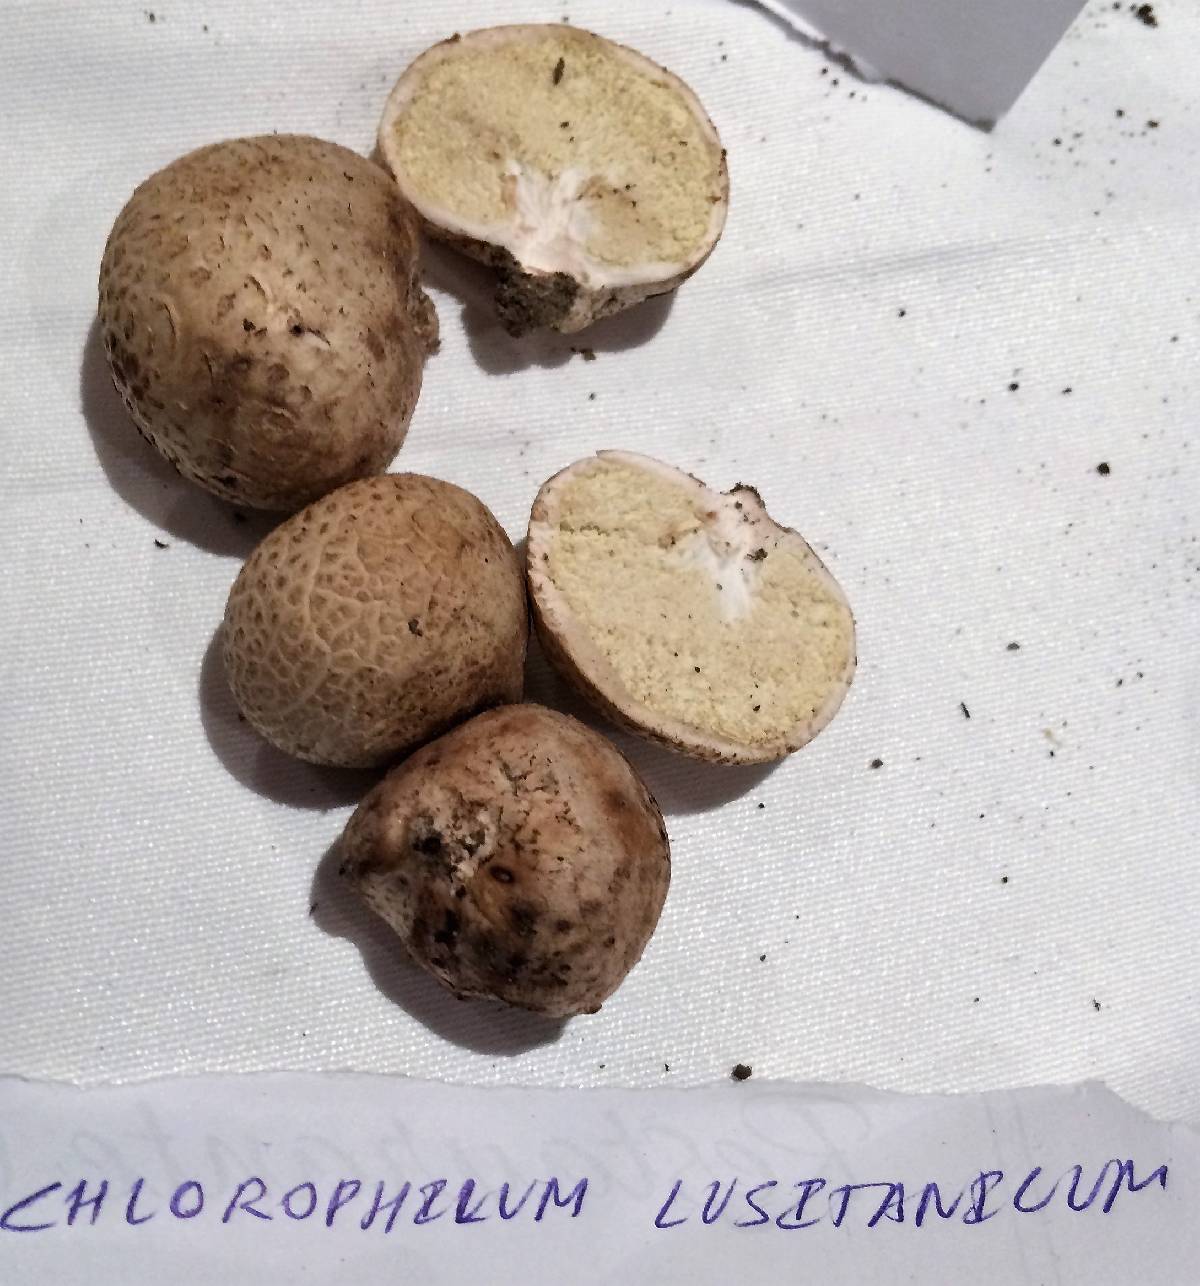 Chlorophyllum lusitanicum image